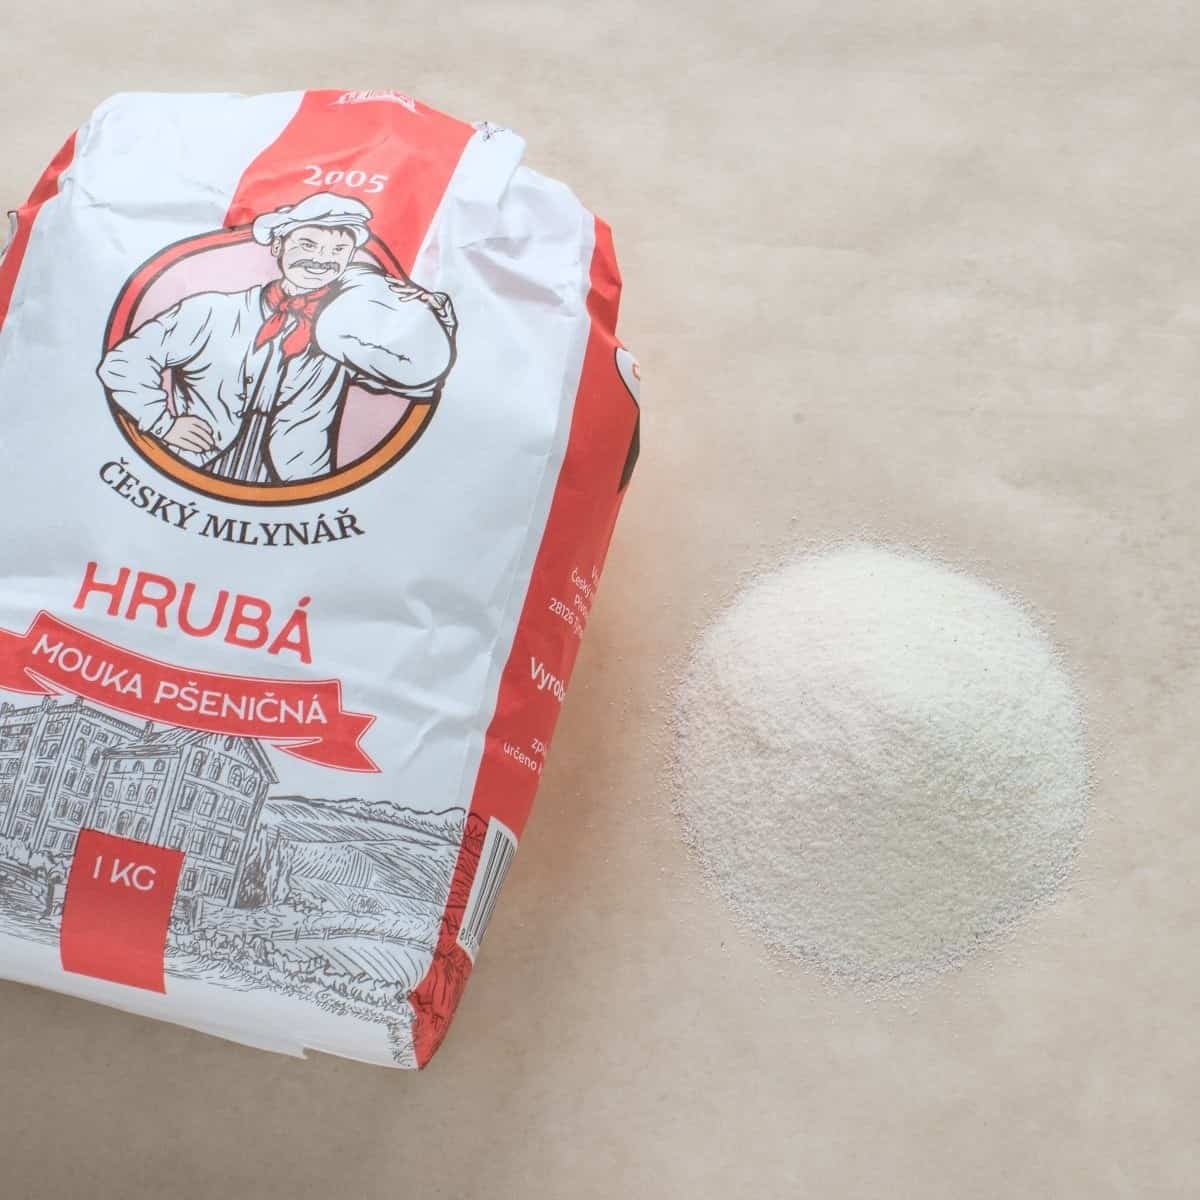 Czech hrubá mouka flour.